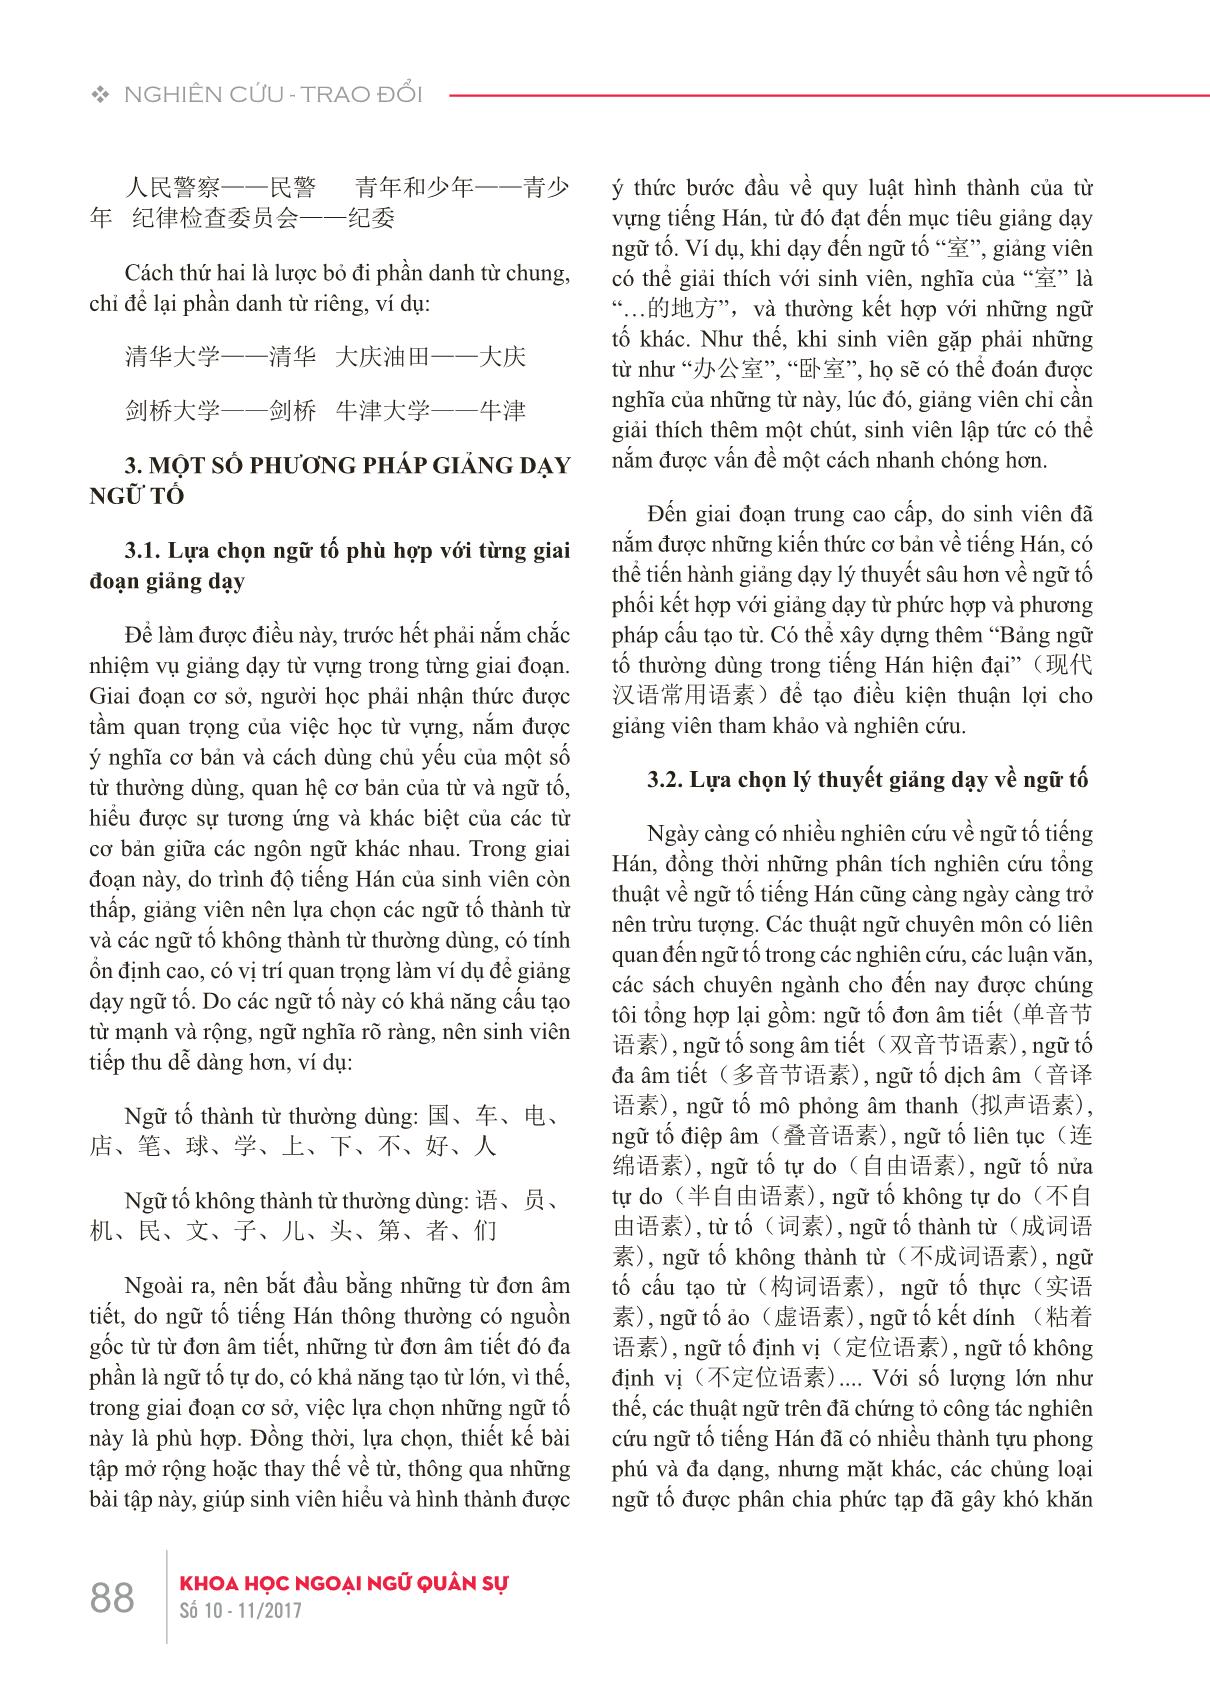 Bàn về dạy từ vựng tiếng Hán thông qua phương pháp giảng dạy ngữ tố trang 4